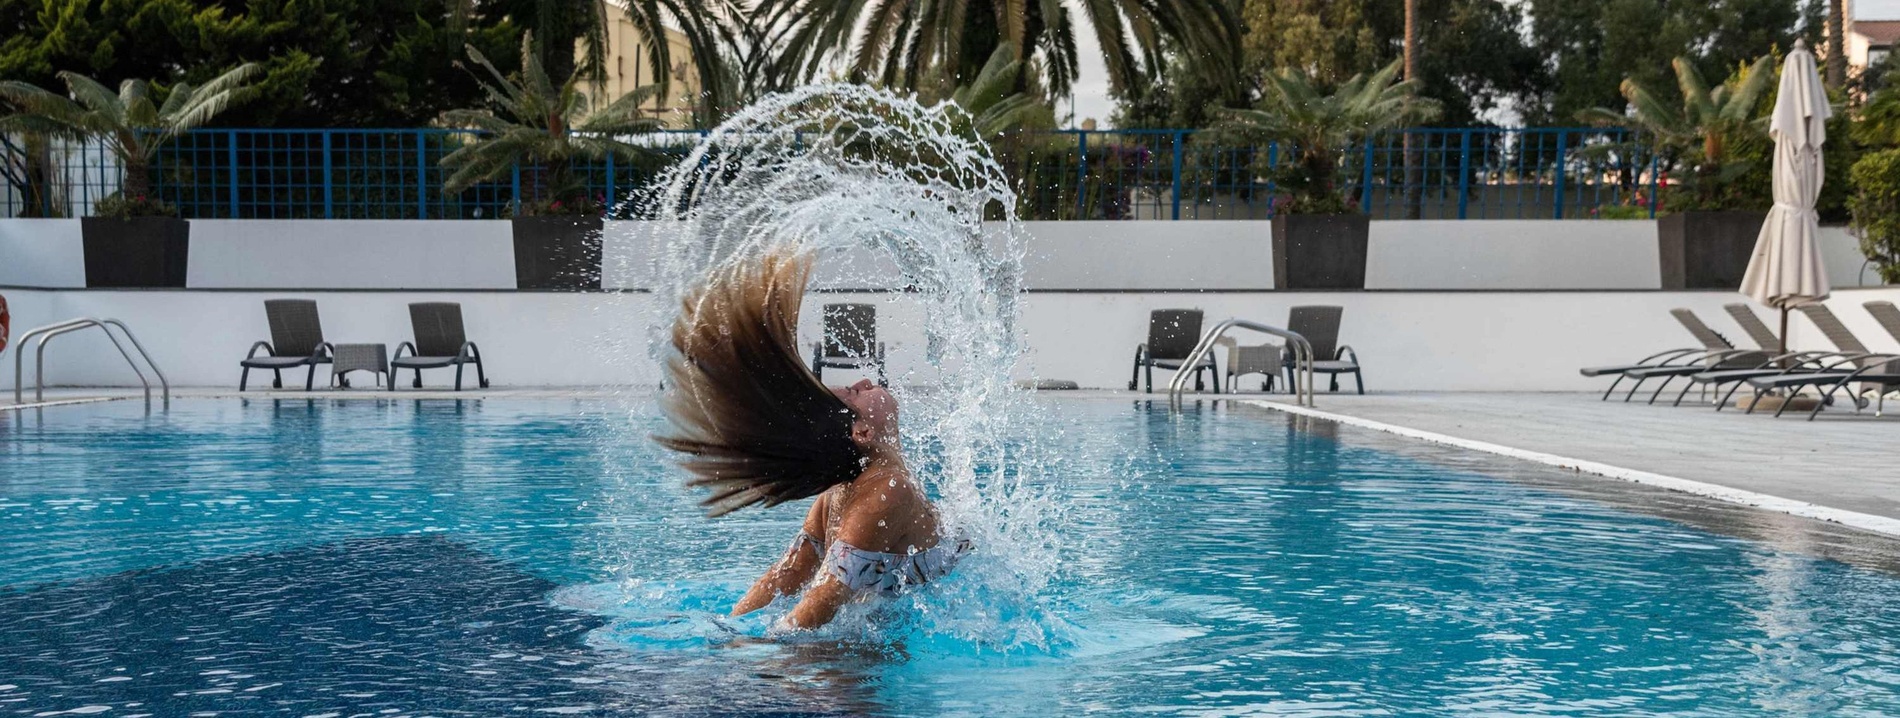 una mujer lanza su cabello al aire en una piscina